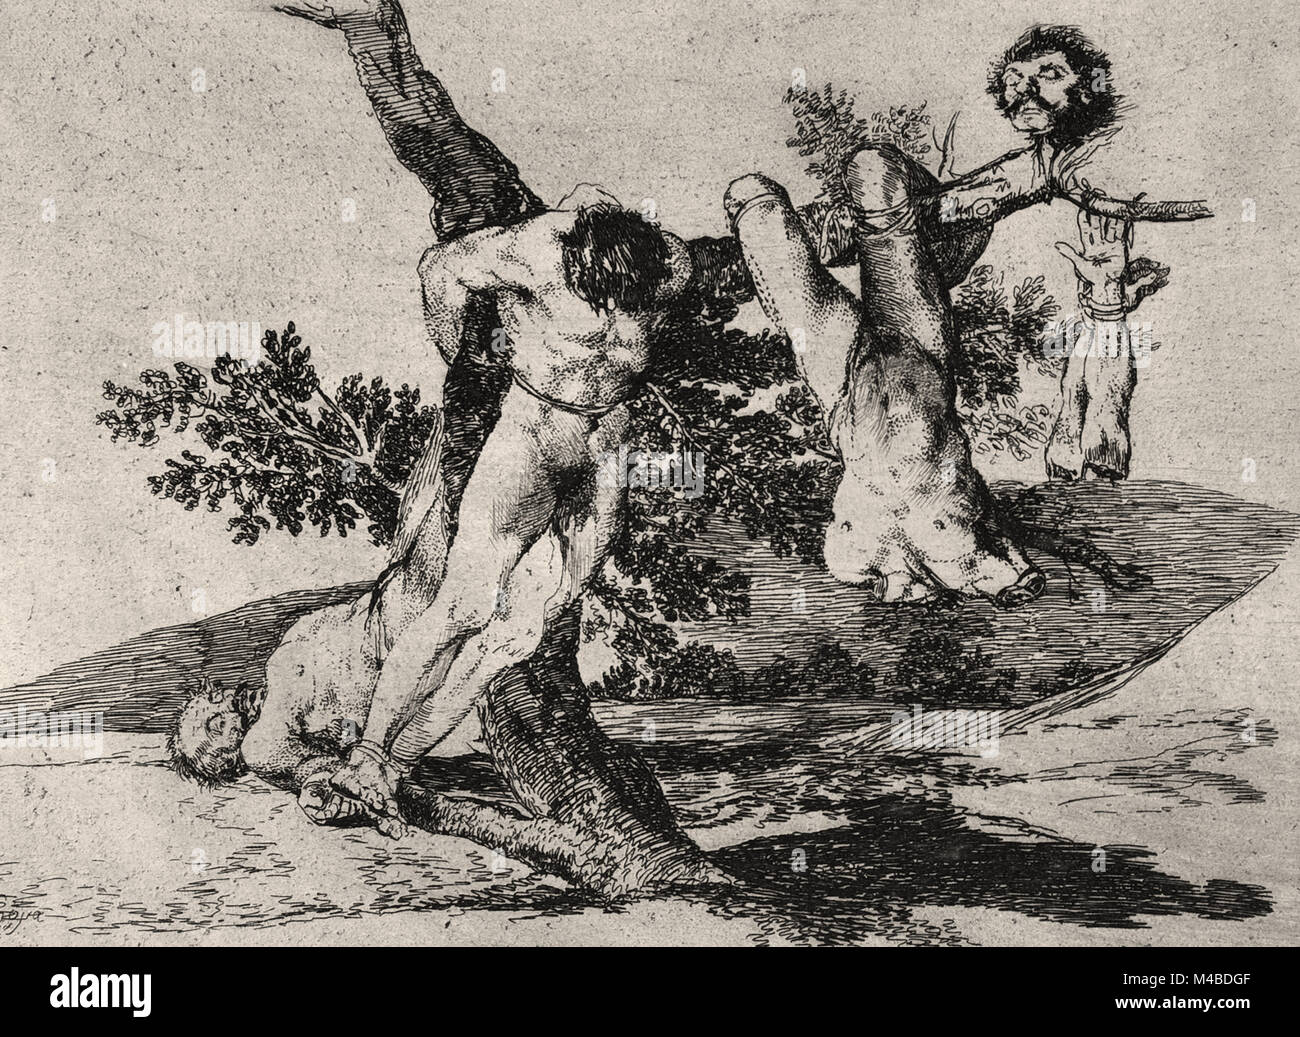 Francisco de Goya y Lucientes -  An Heroic Feat! With Dead Men! (Grande hazaña! Con muertos!), from The Disasters of War (Los Desastres de la Guerra), plate 39 Stock Photo